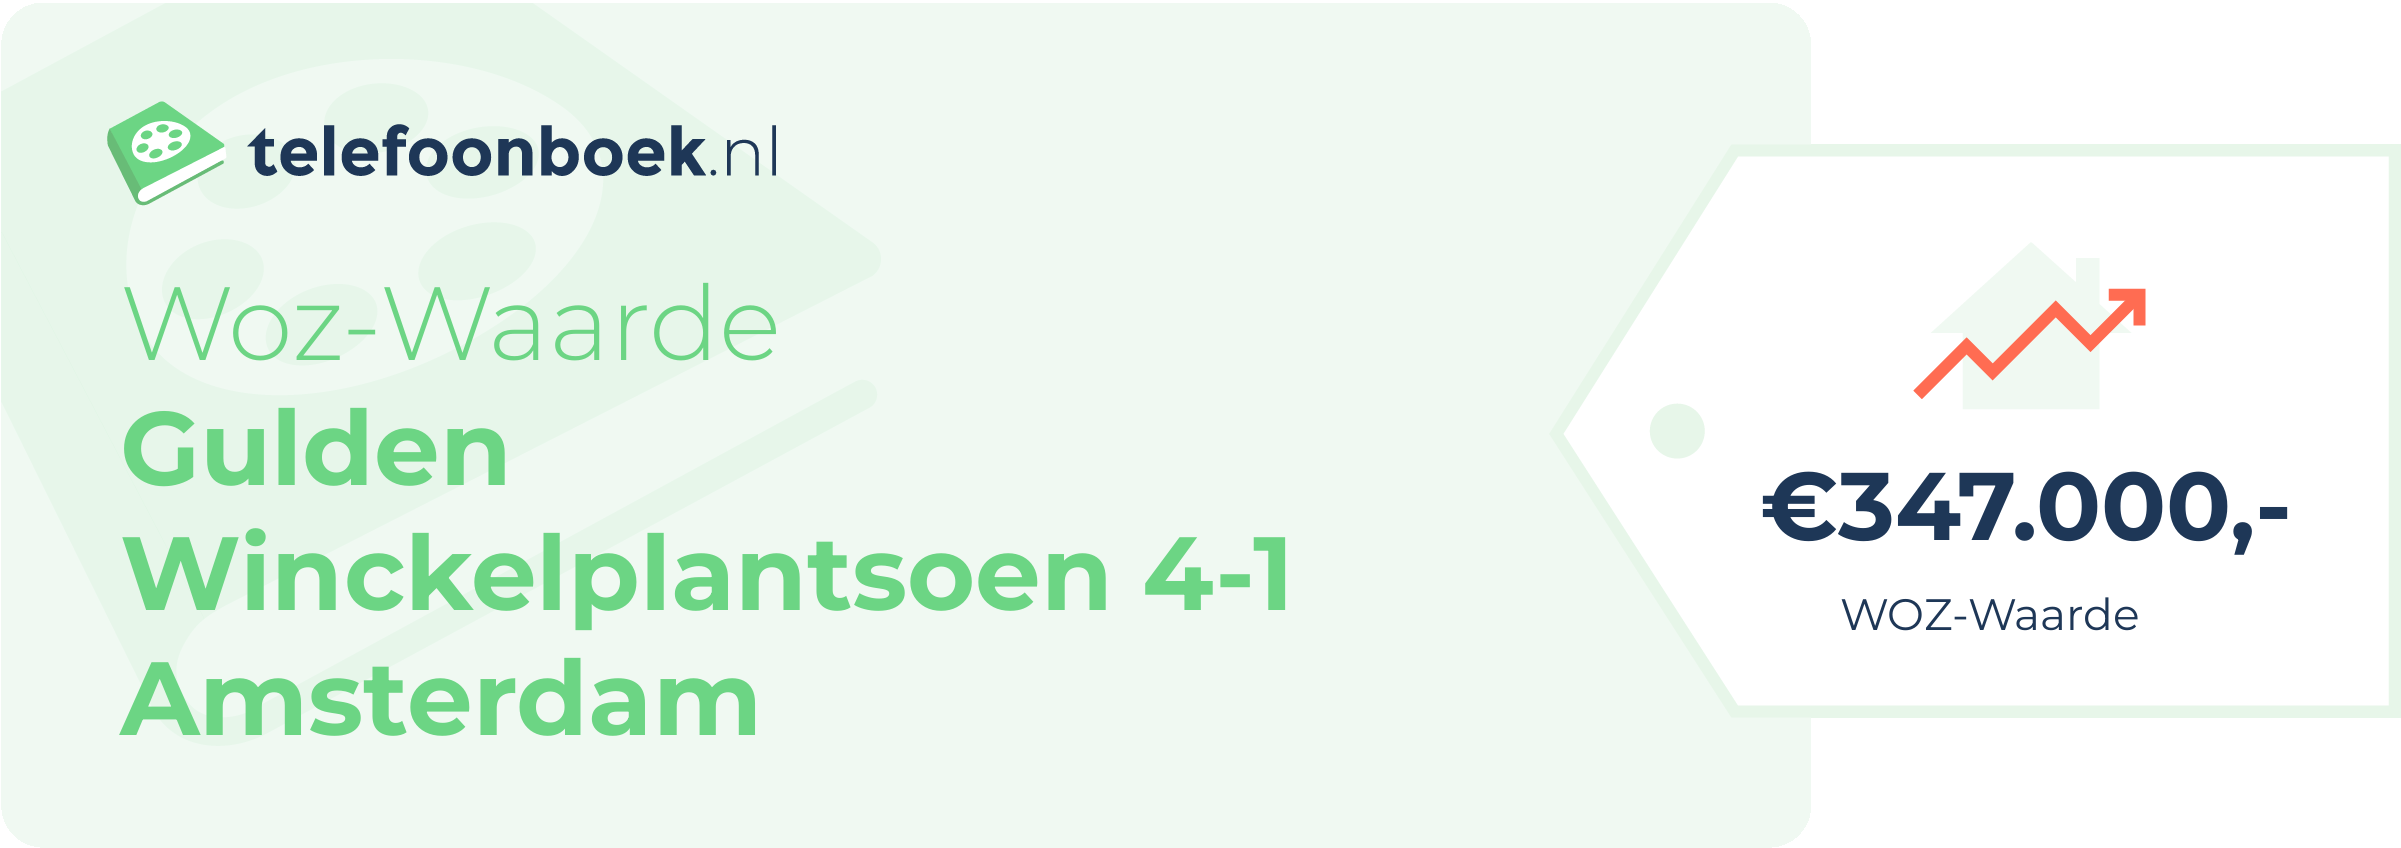 WOZ-waarde Gulden Winckelplantsoen 4-1 Amsterdam